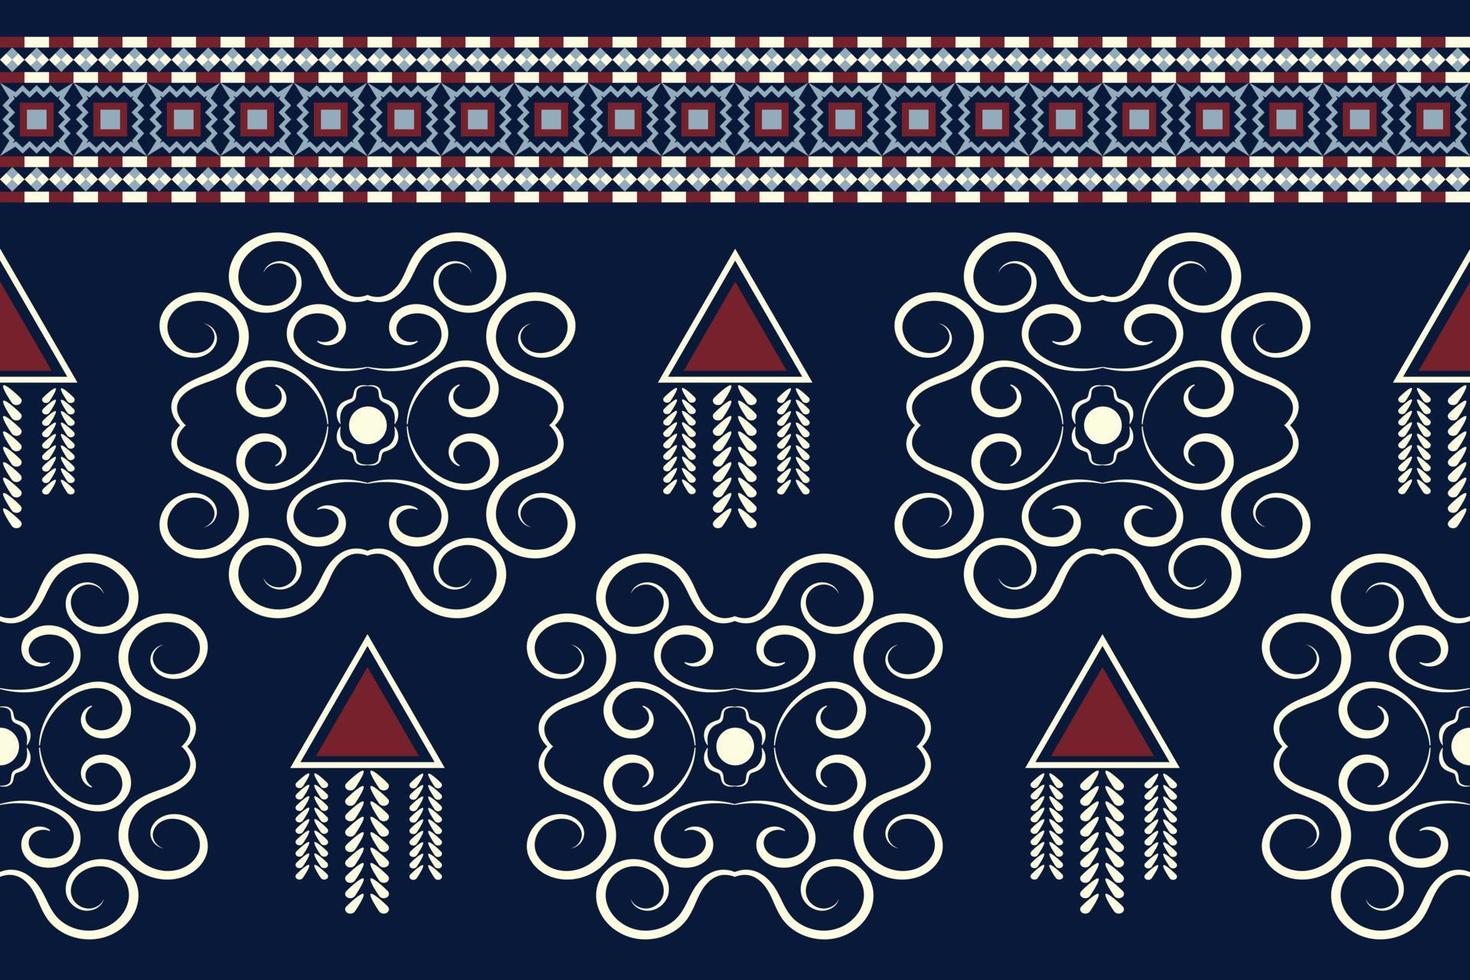 geometrischer stil des ethnischen stoffmusters. Sarong aztekisches ethnisches orientalisches Muster traditioneller dunkler marineblauer Hintergrund. abstrakt, vektor, illustration. Verwendung für Textur, Kleidung, Verpackung, Dekoration, Teppich. vektor